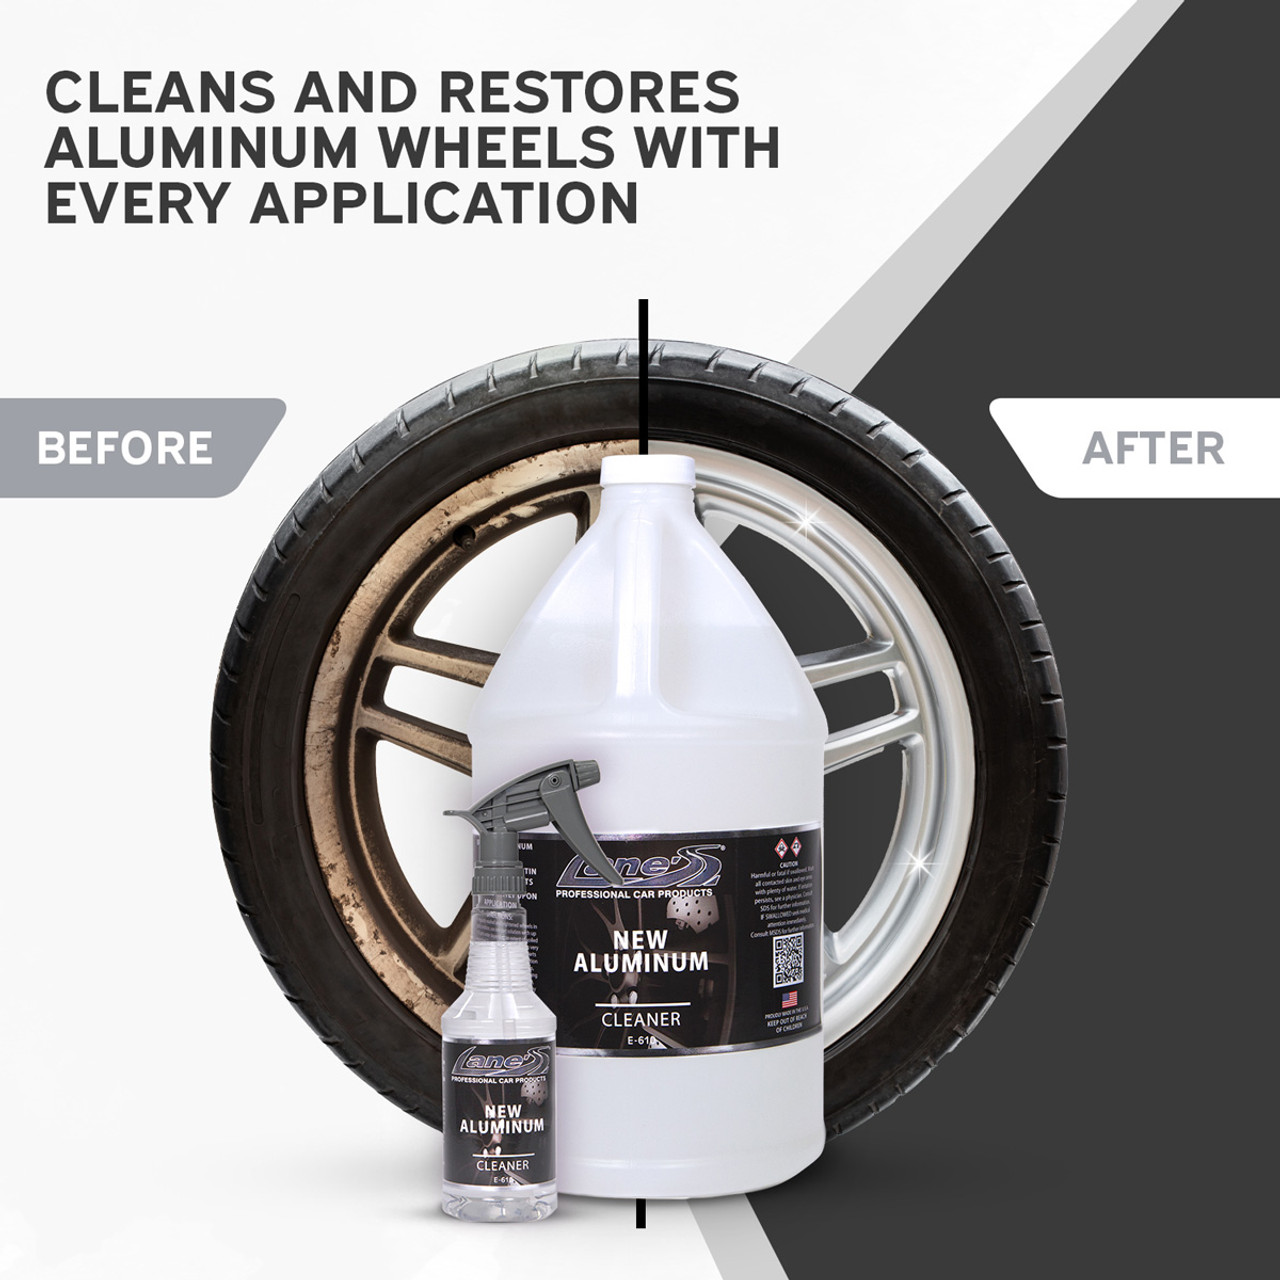 Lane's Aluminum Wheel Cleaner - Best Acidic Wheel Cleaner on the Market